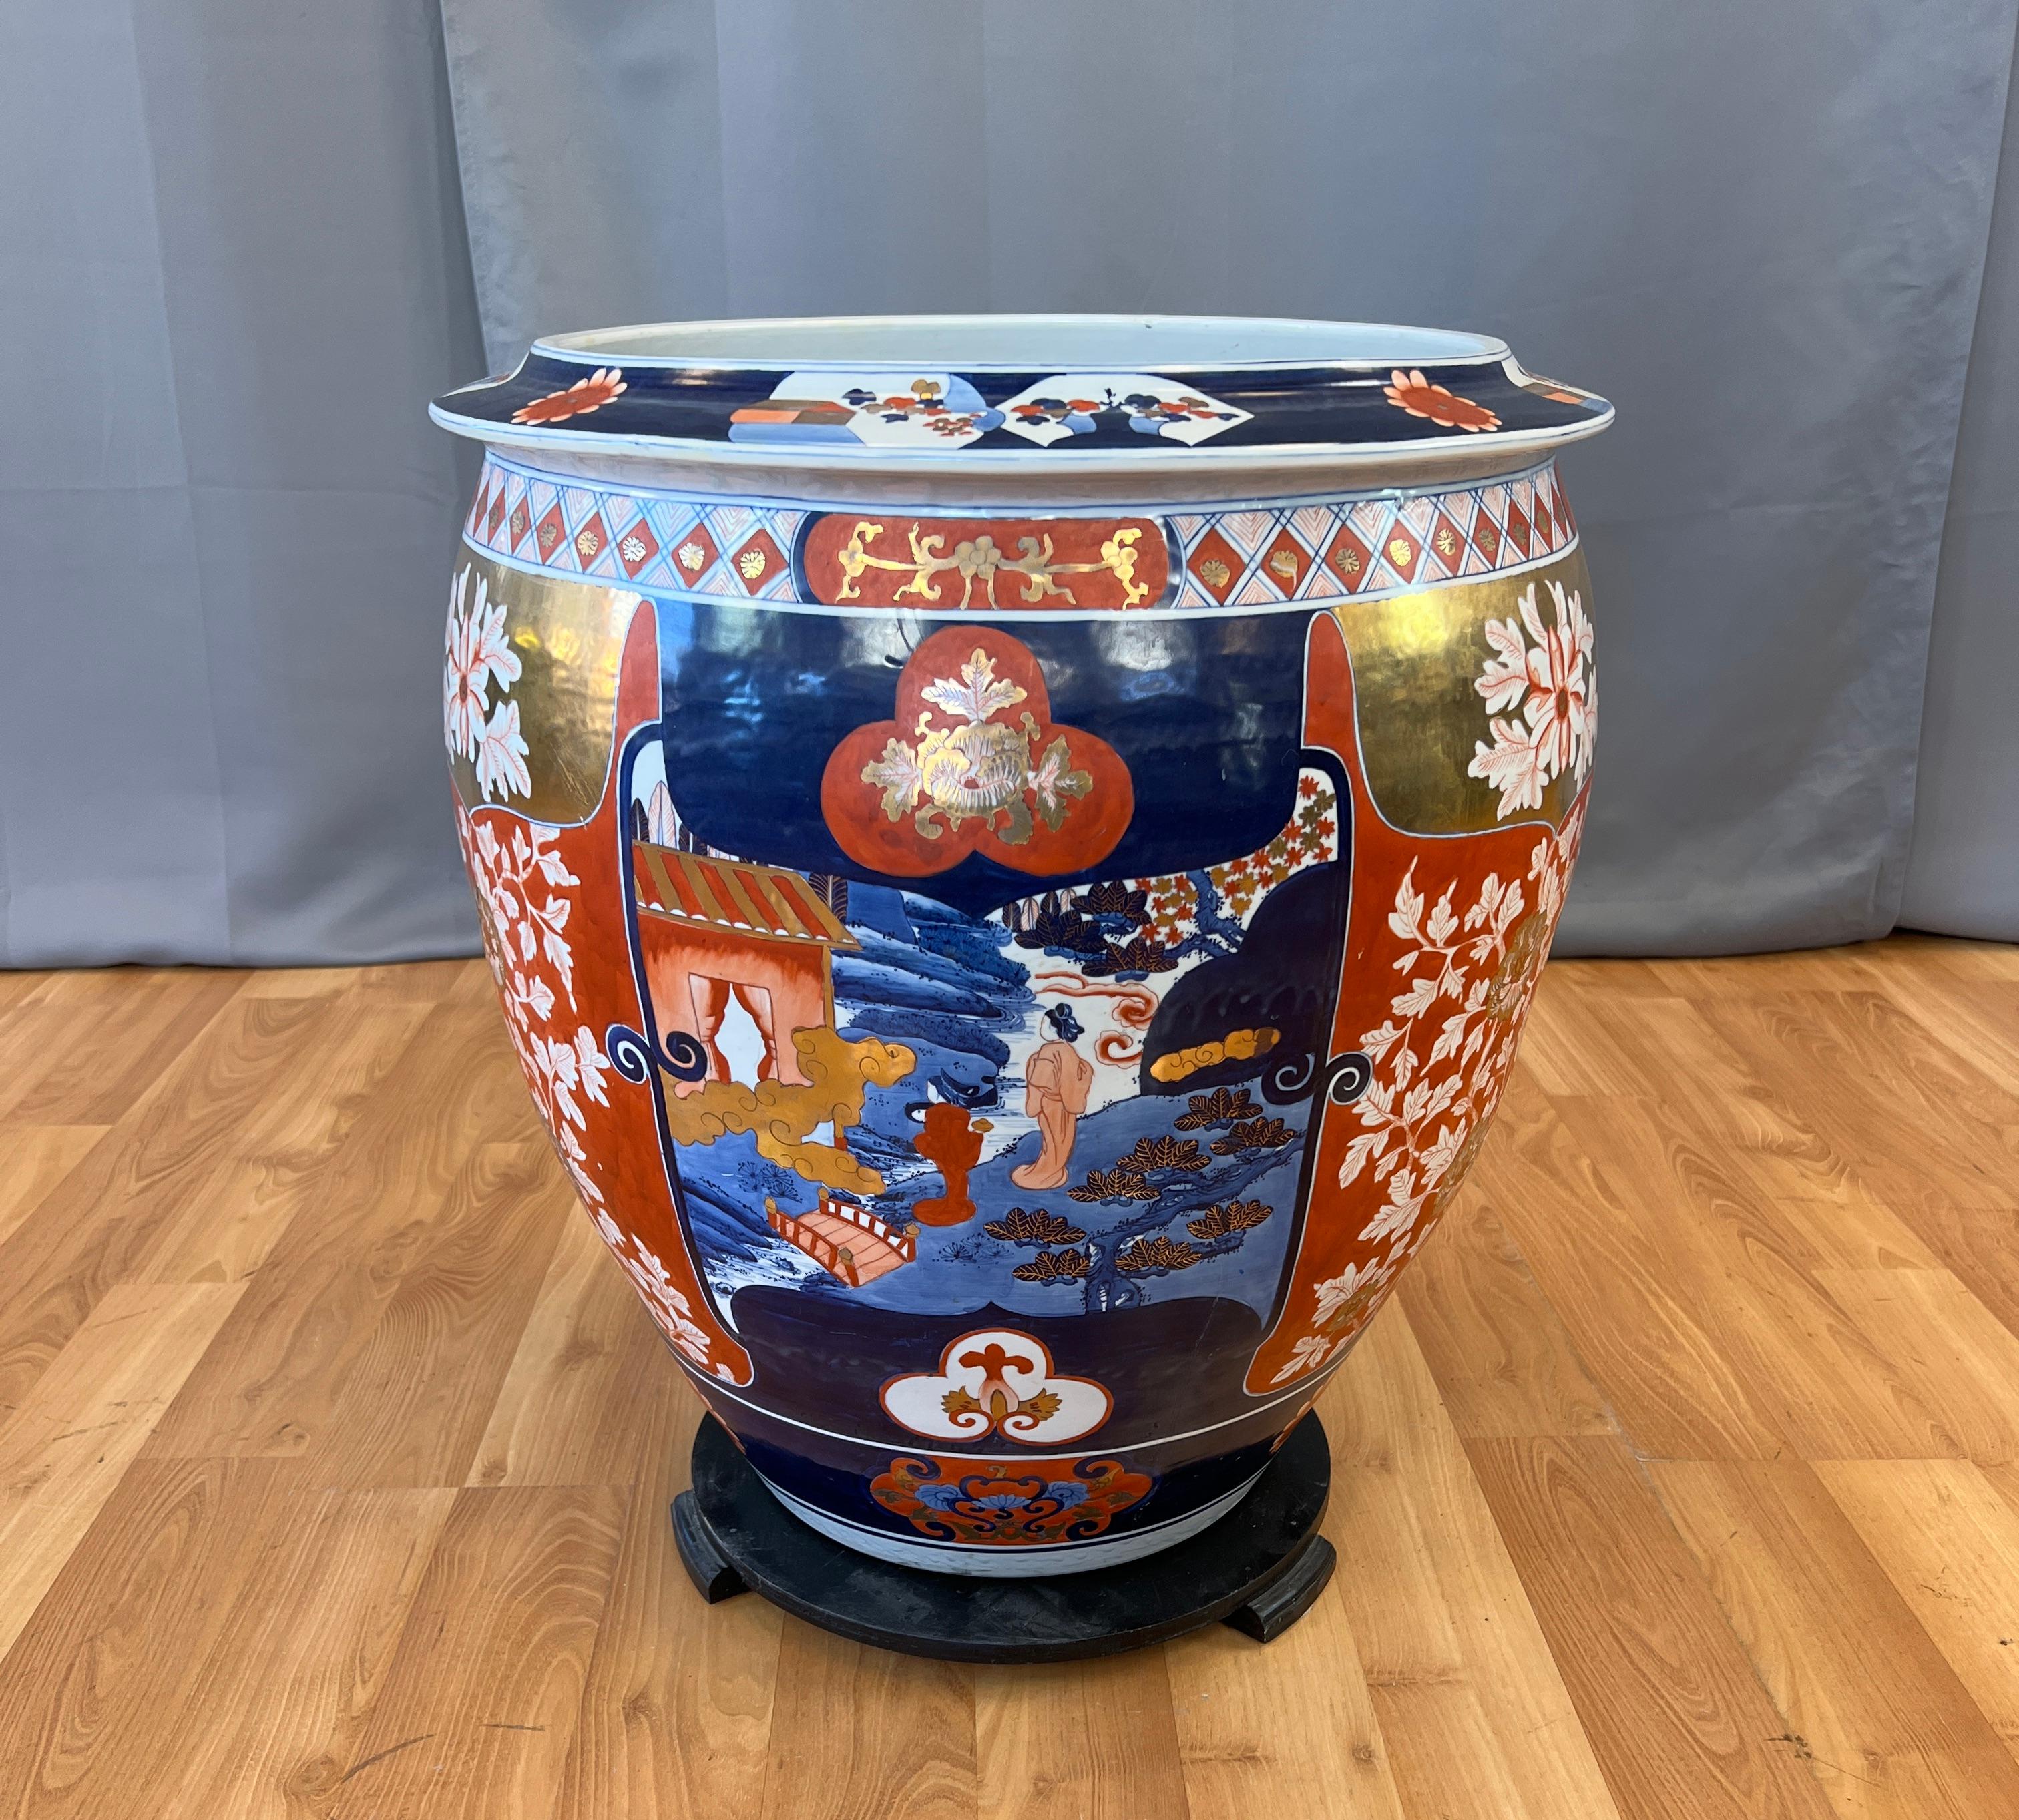 Nous vous proposons ici une monumentale jardinière en porcelaine japonaise Imaxi. 

De merveilleuses couleurs ont été utilisées, du bleu, à la fois foncé et clair, de l'or, des rouges et du blanc, représentant des scènes d'un couple de femmes